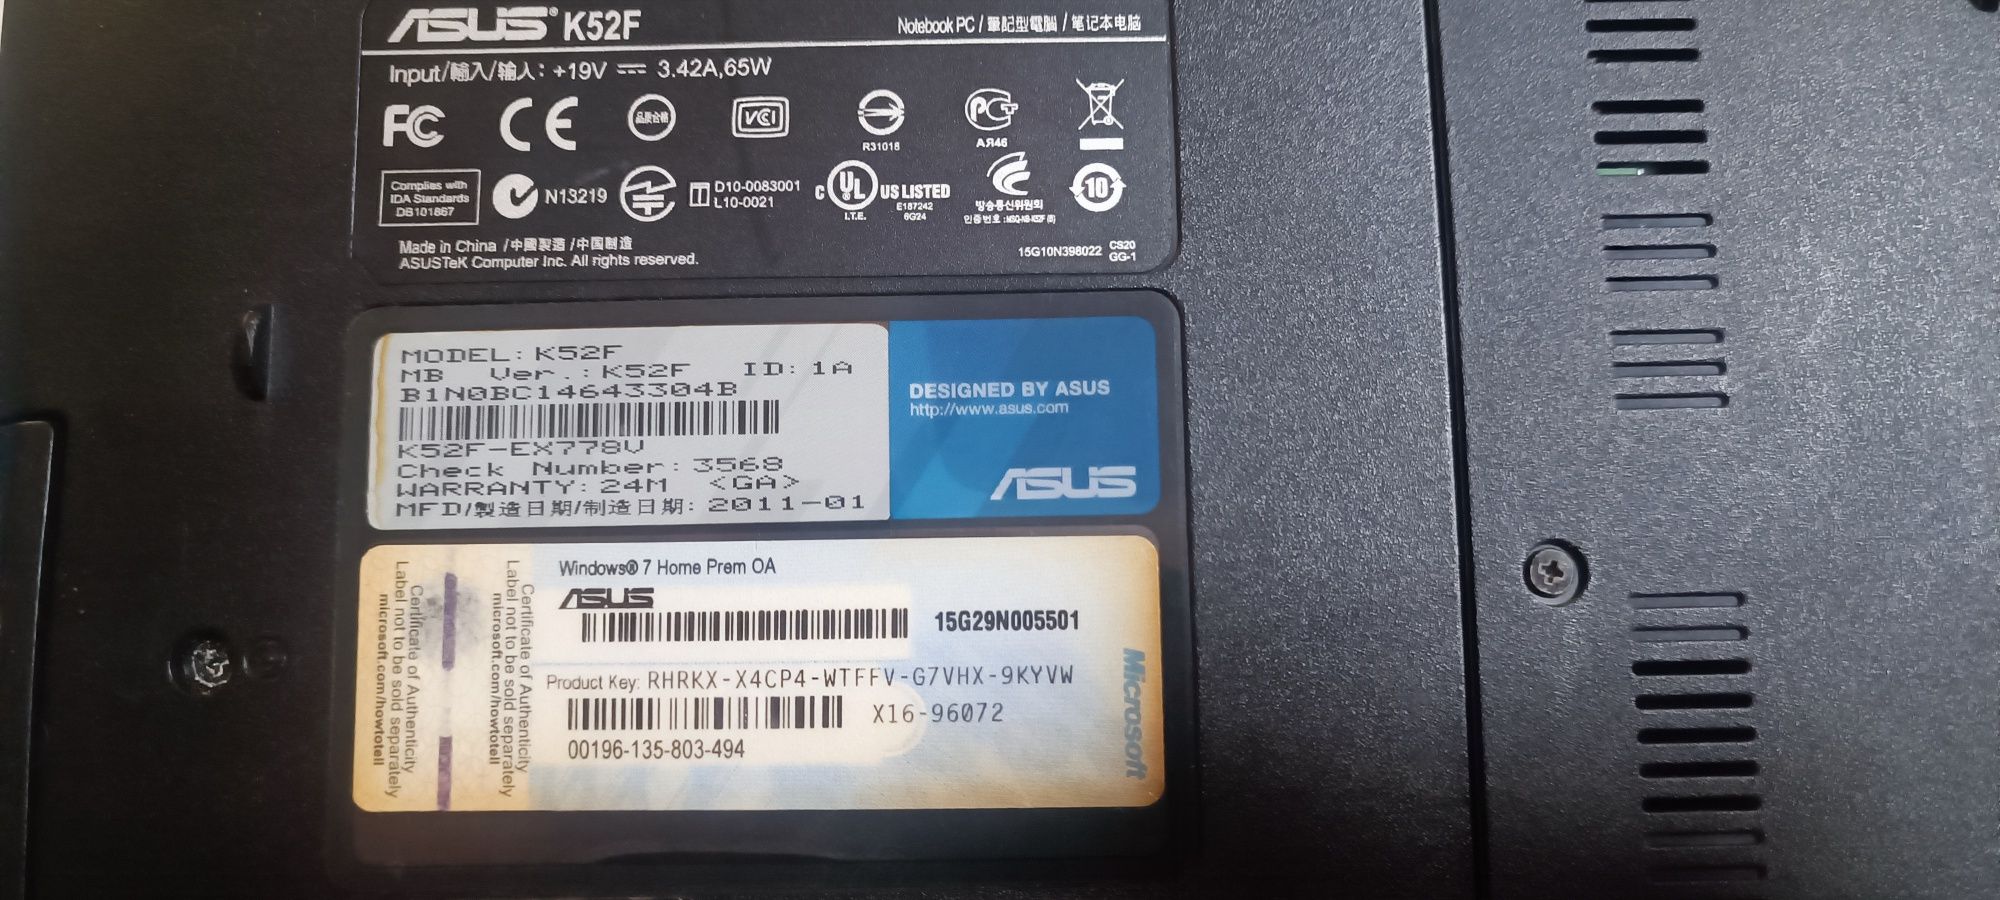 Laptop Asus k52f